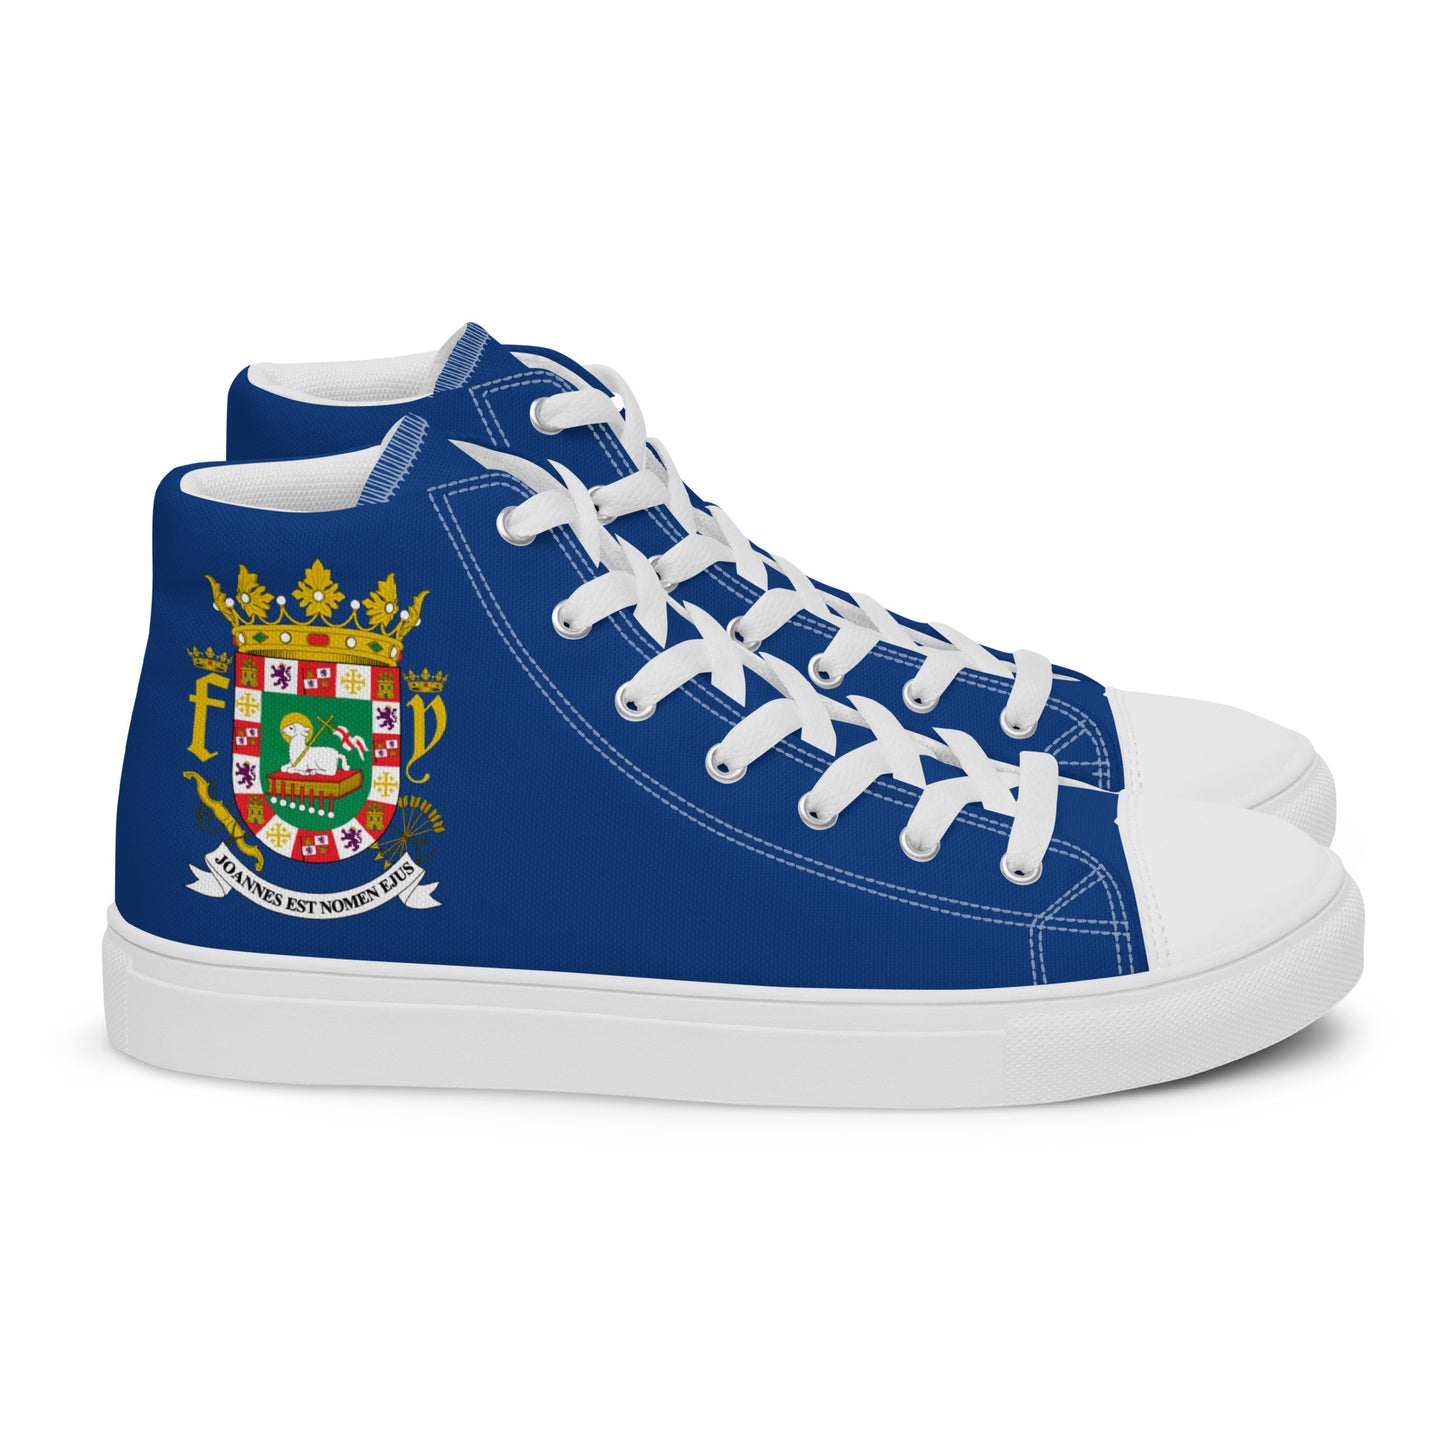 Puerto Rico - Men - Blue - High top shoes